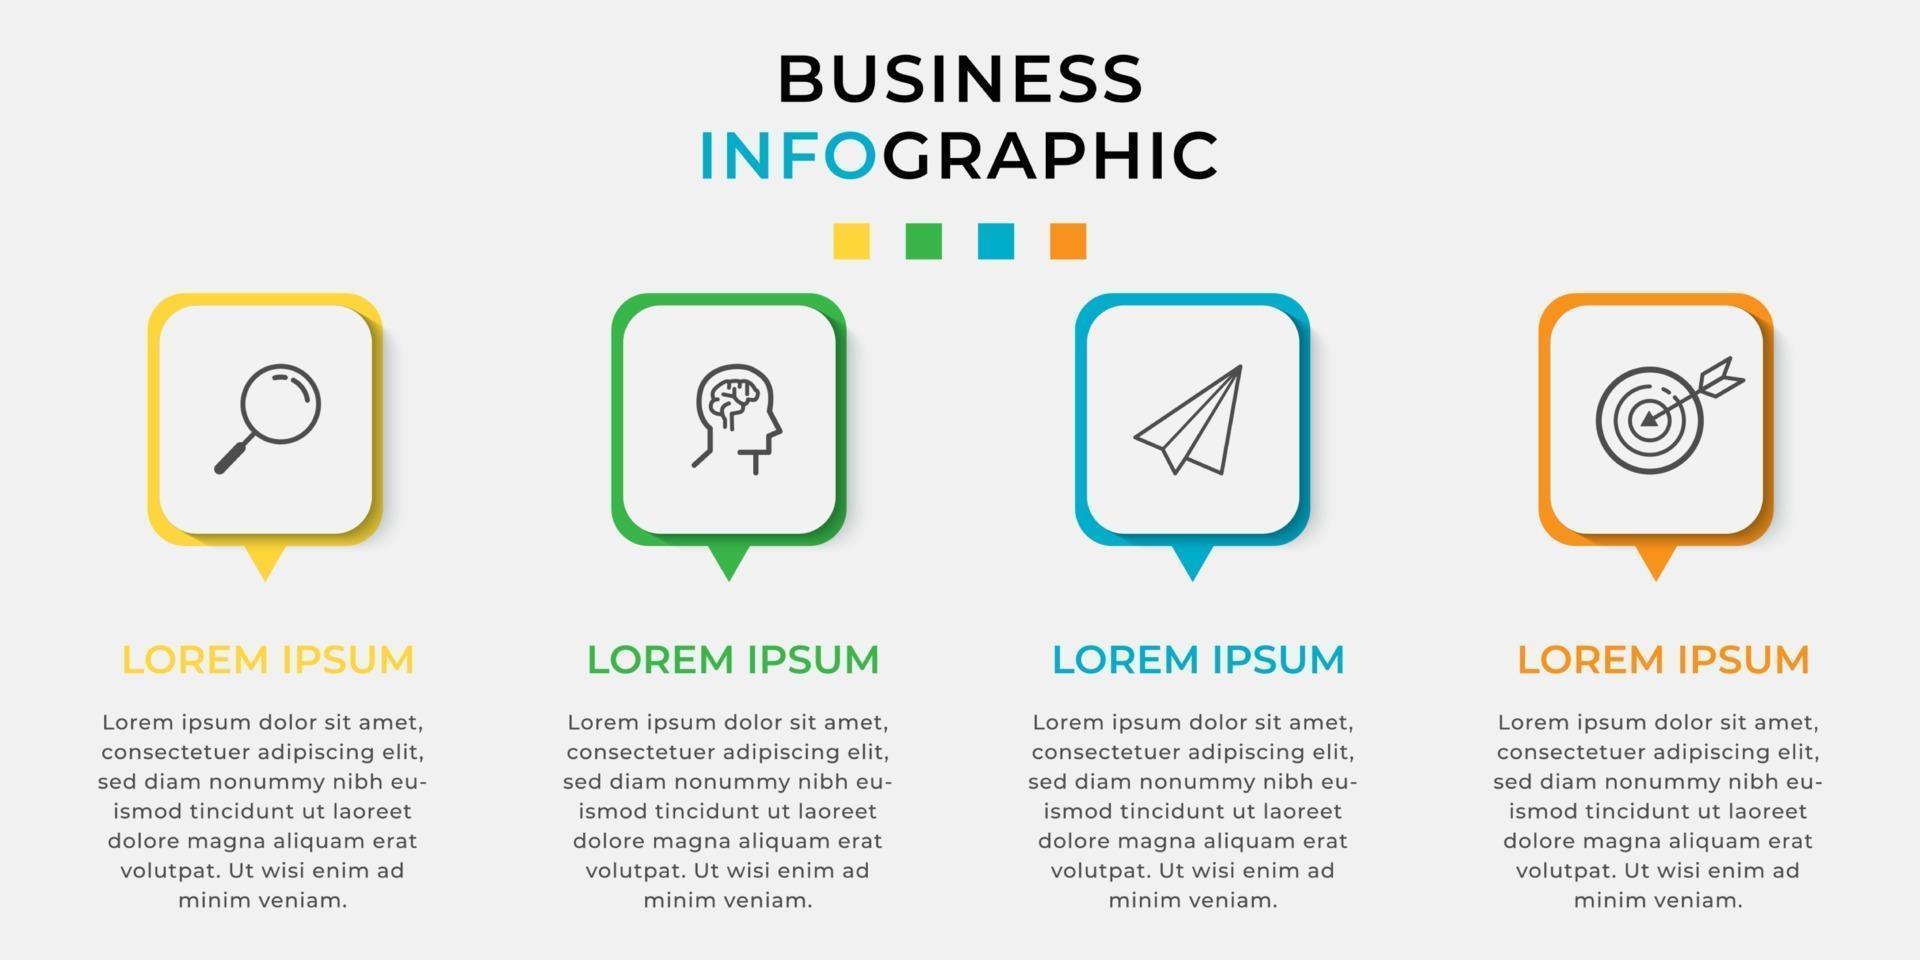 Línea de tiempo mínima de plantilla de infografías de negocios con opciones de 4 pasos e íconos de marketing vector